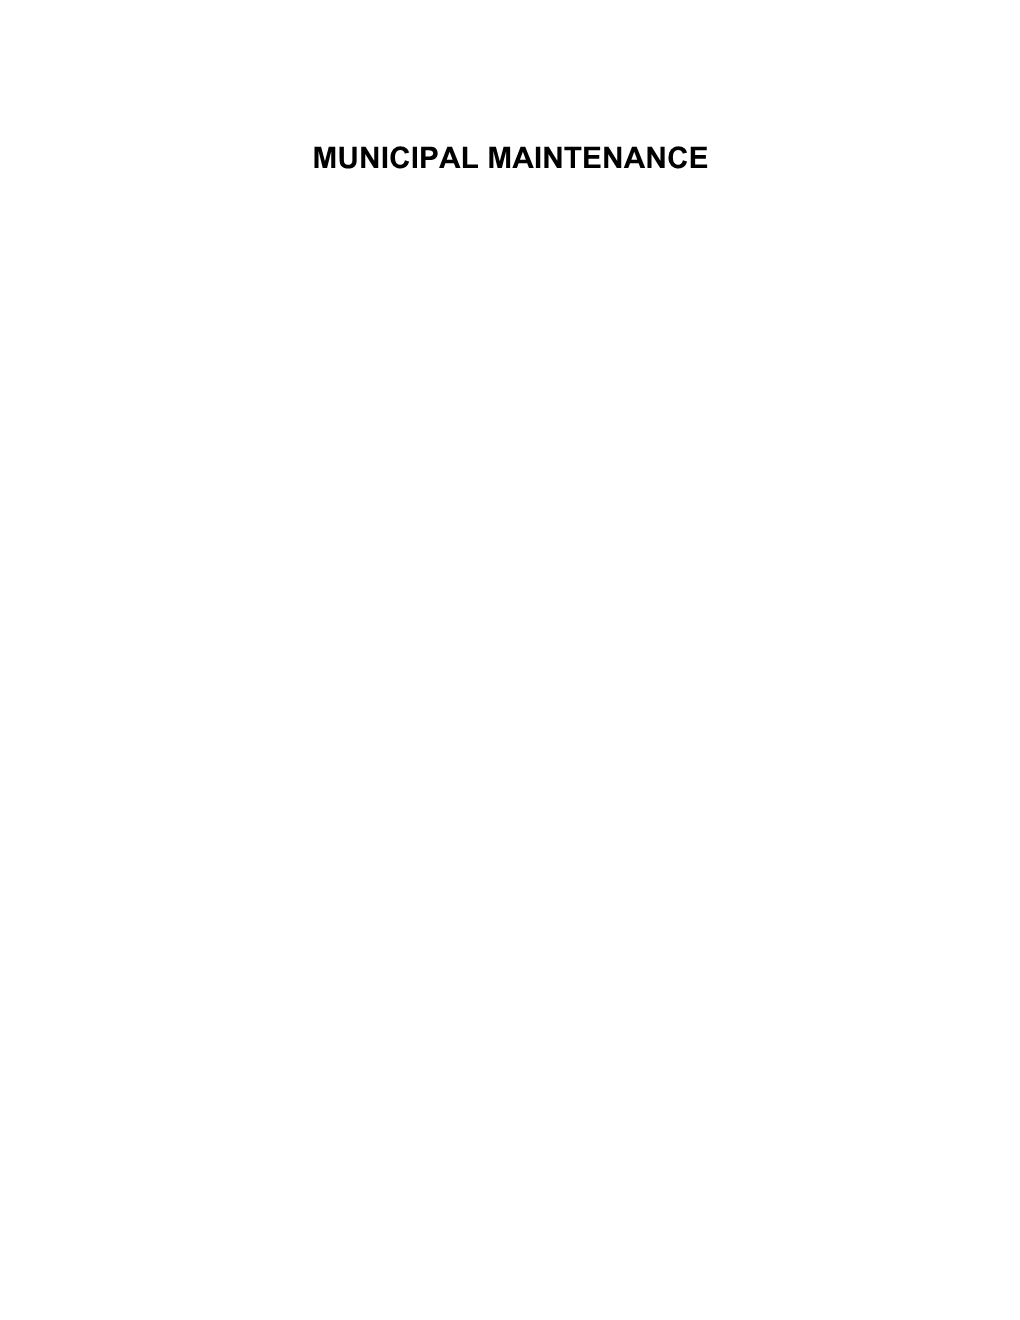 Municipal Maintenance